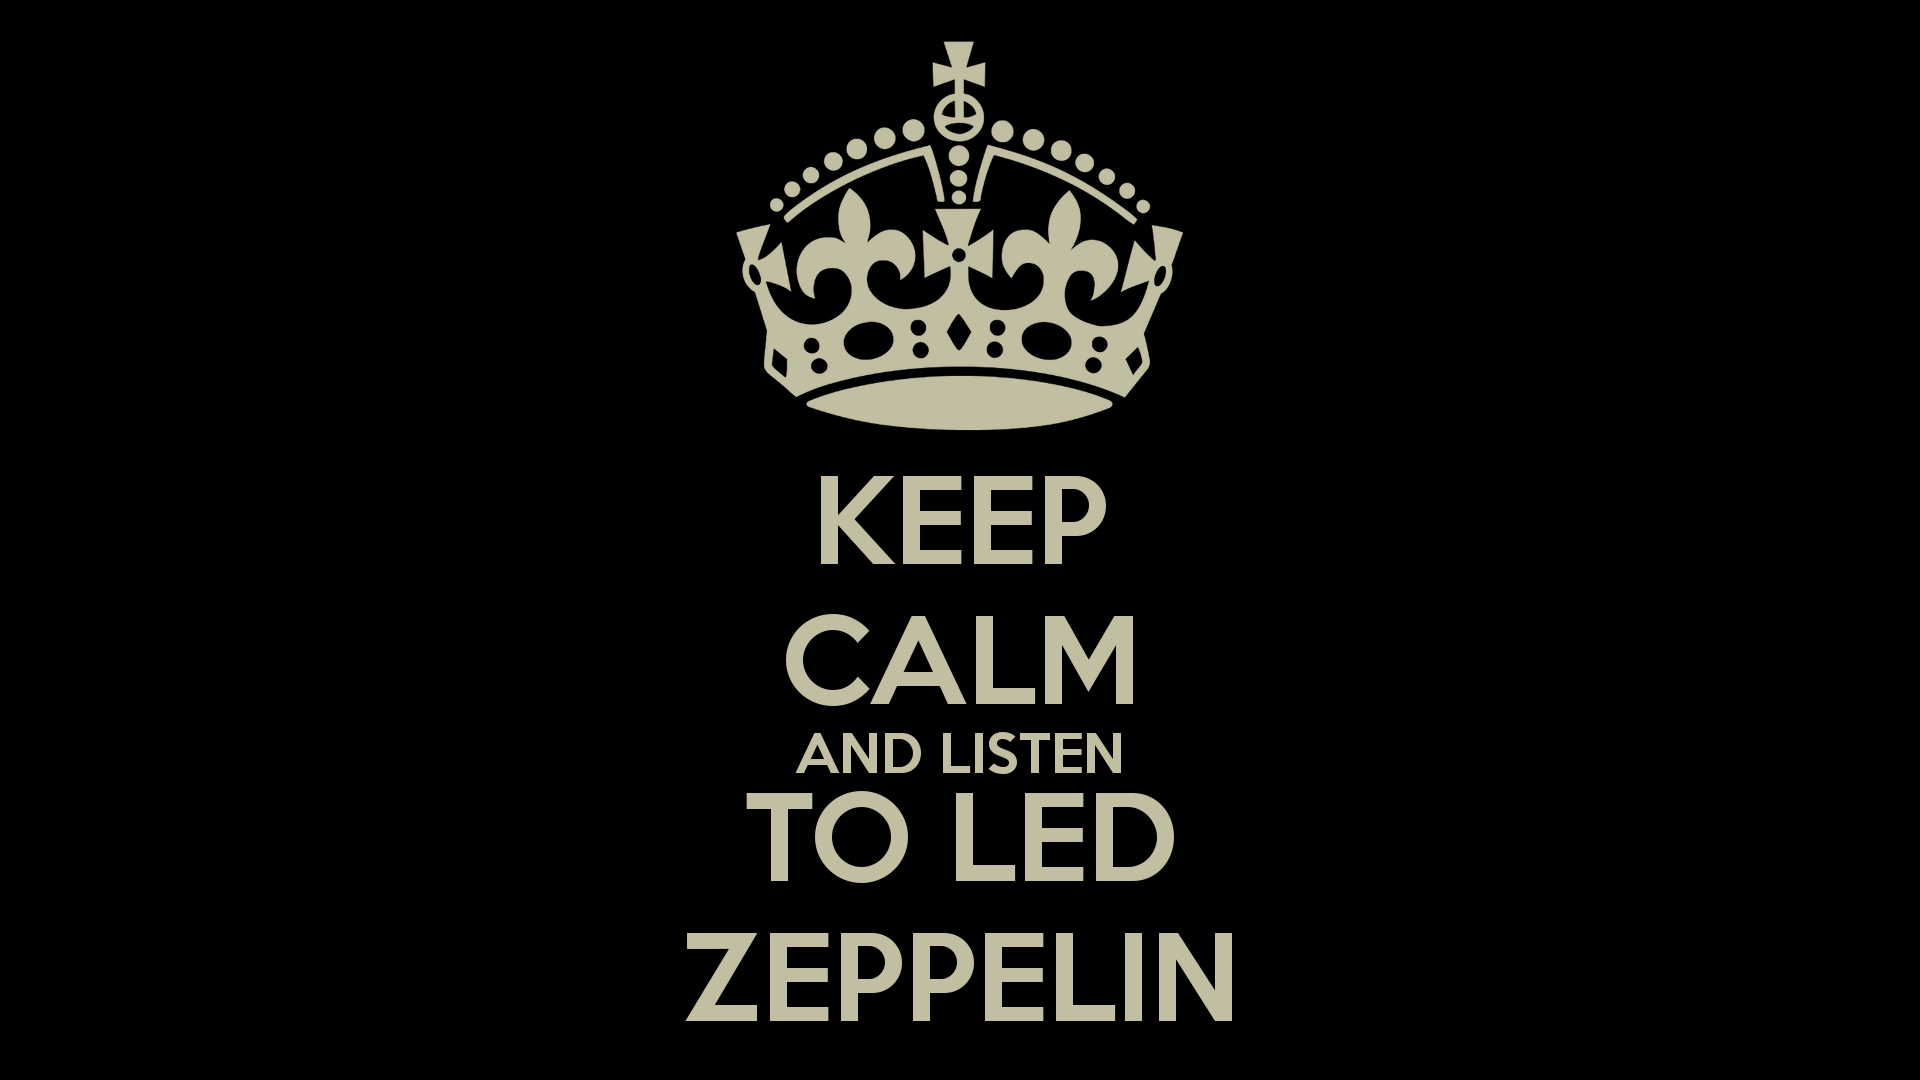 best ideas about Led zeppelin wallpaper Led. HD